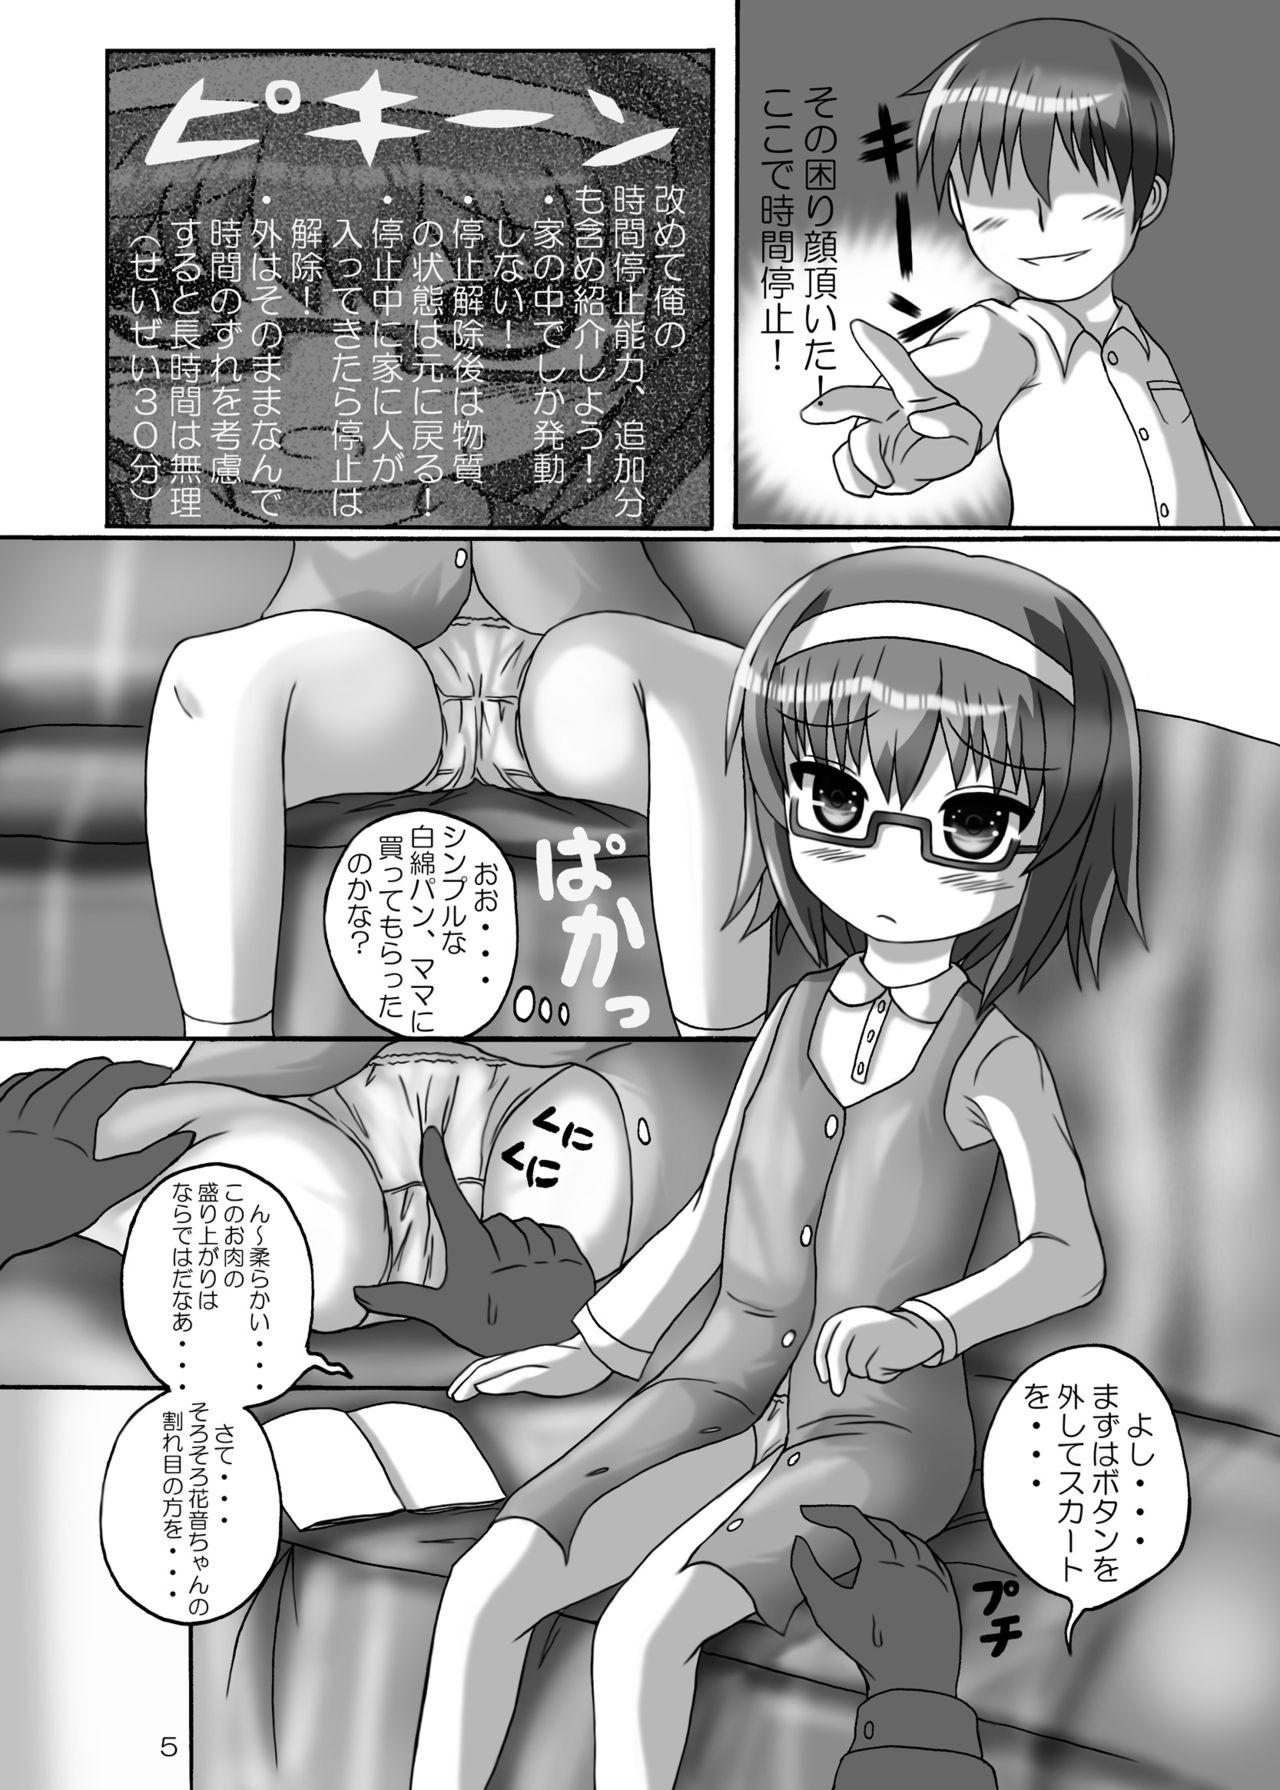 Dicks Jikan Teishi Onii-chan Kita na.. 2 - Original  - Page 5